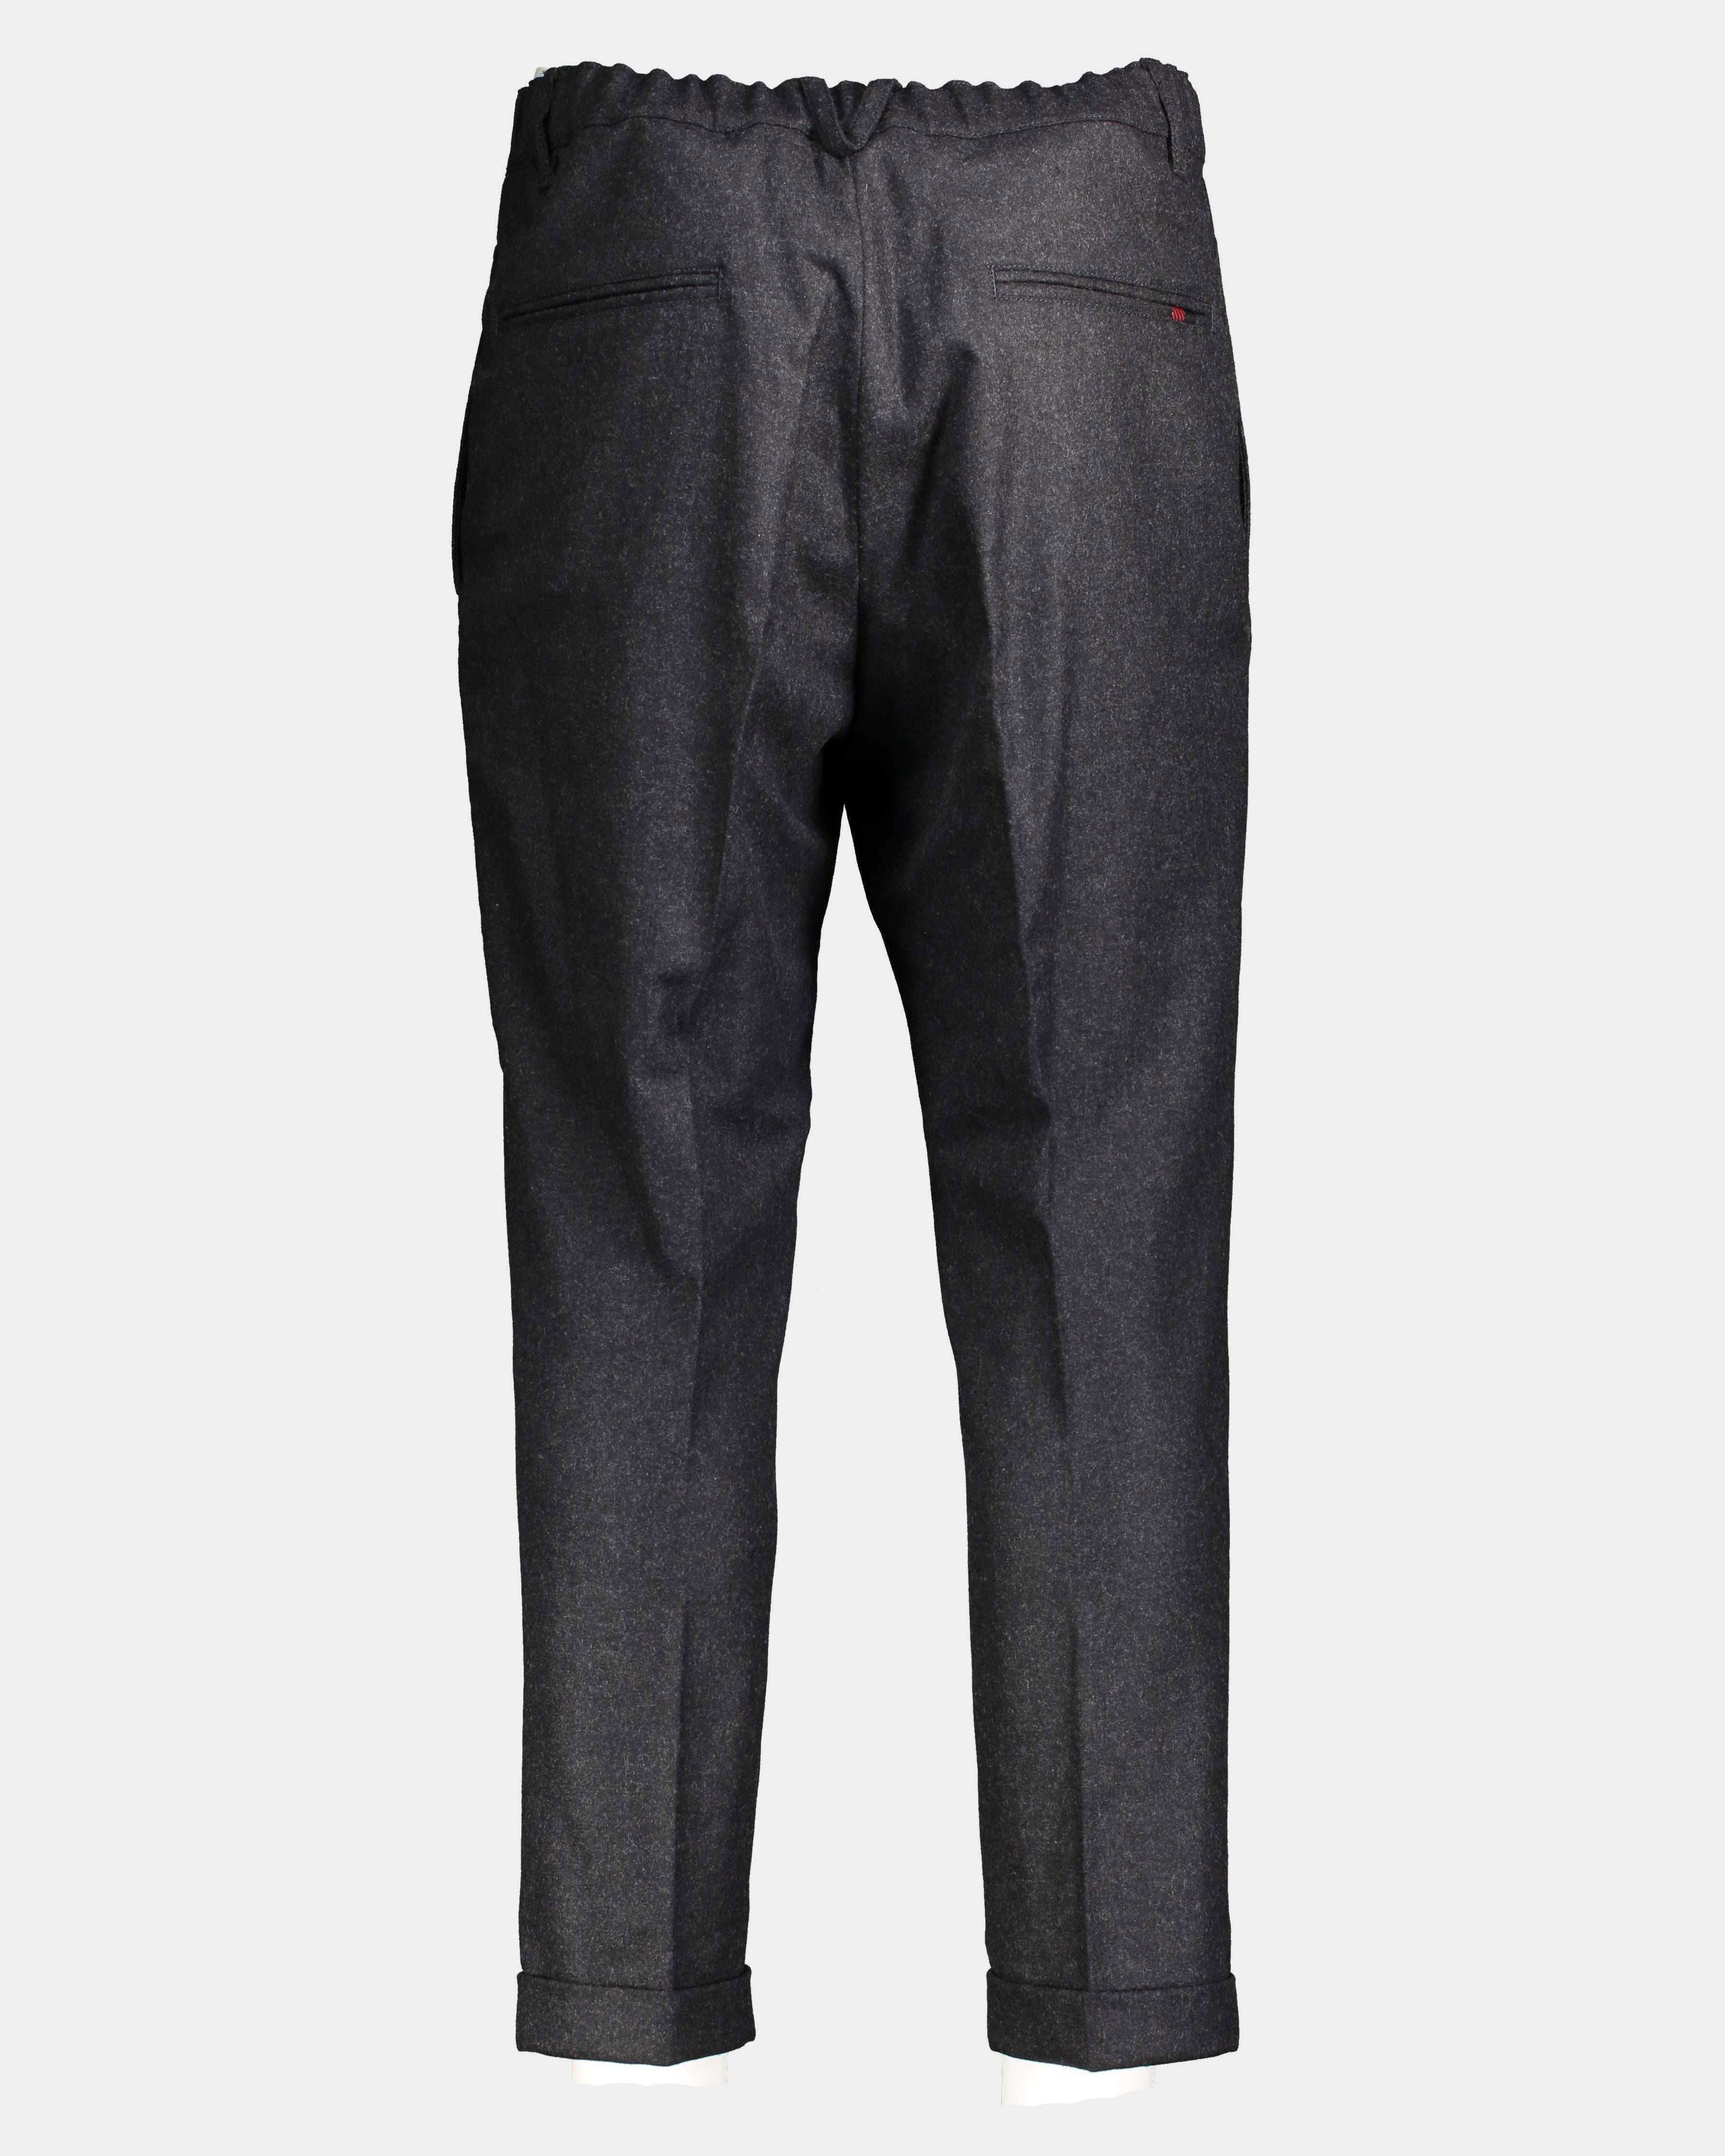 Pantalone Chino flanella grigio